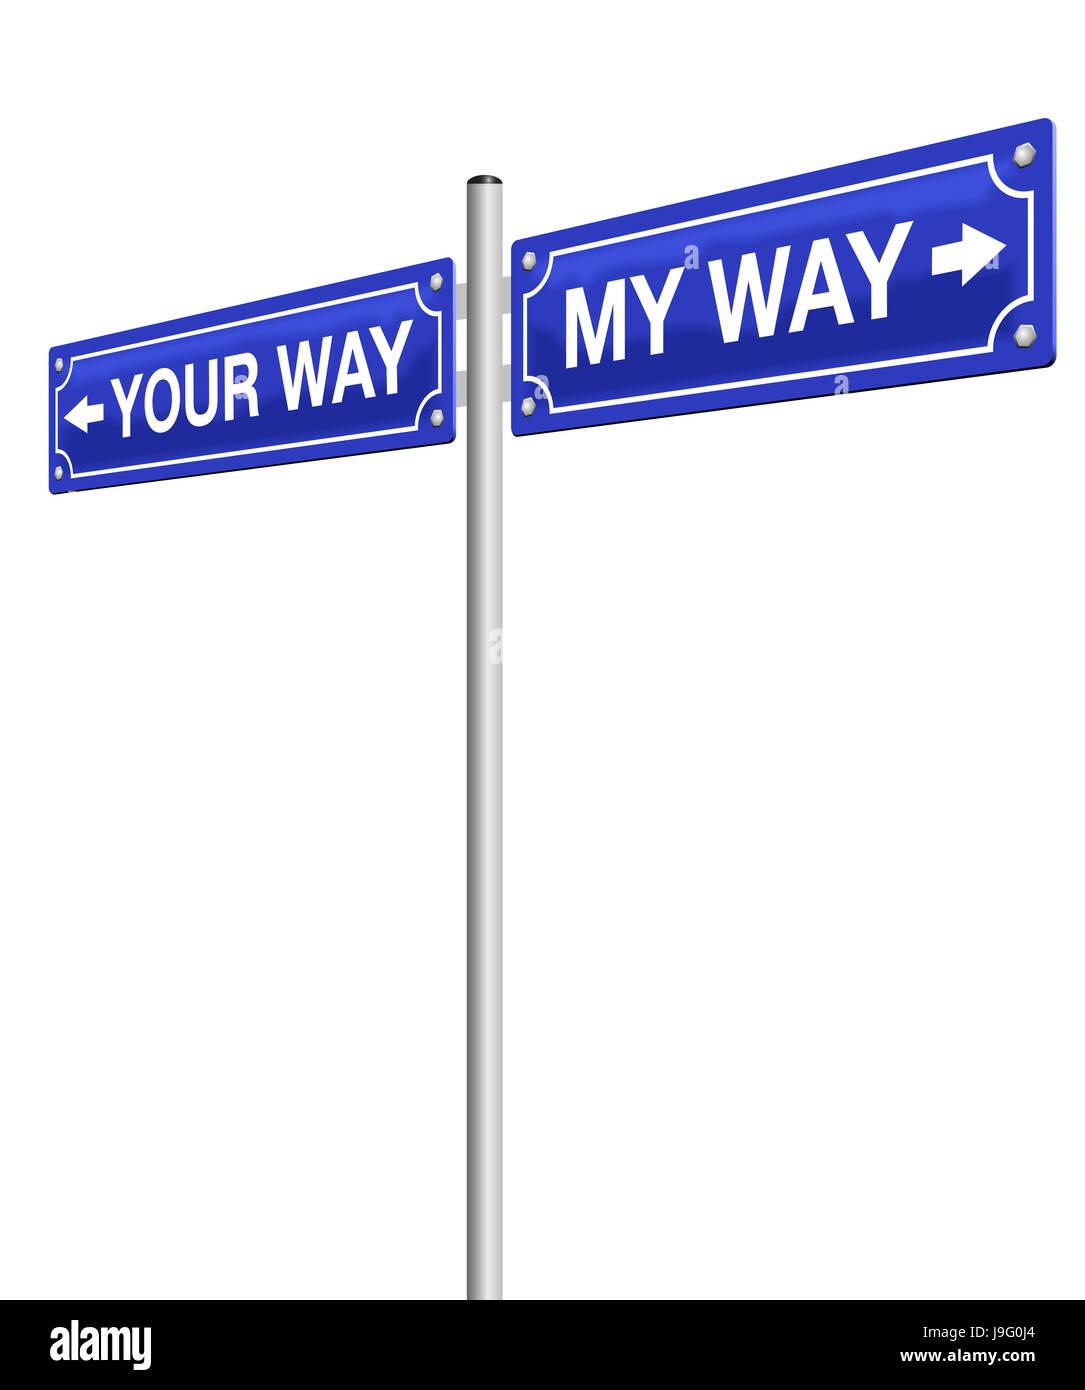 Mein Weg - Ihr Weg - Straßenschild, symbolisch für Scheidung, Abschied und gehen getrennte Wege, Routen oder entgegengesetzte Richtungen. Stockfoto